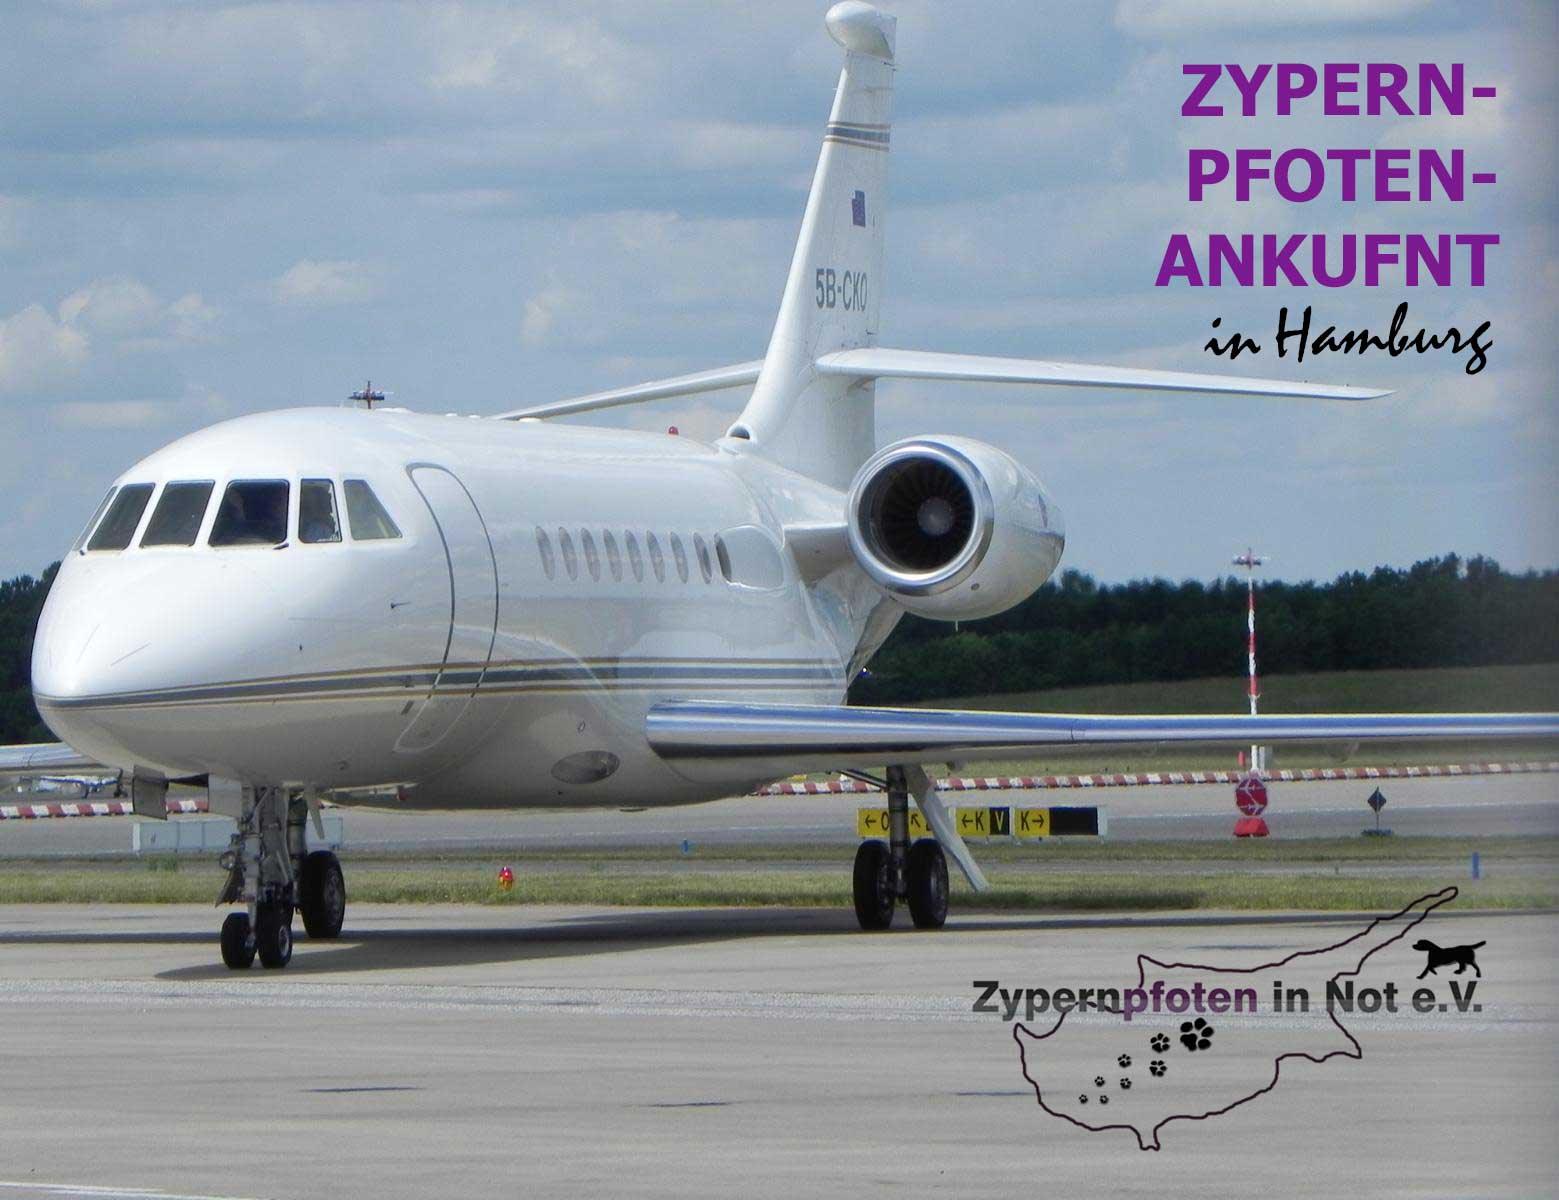 Das Zypernpfotenflugtaxi ist auf dem Hamburger Flughafen gelandet.